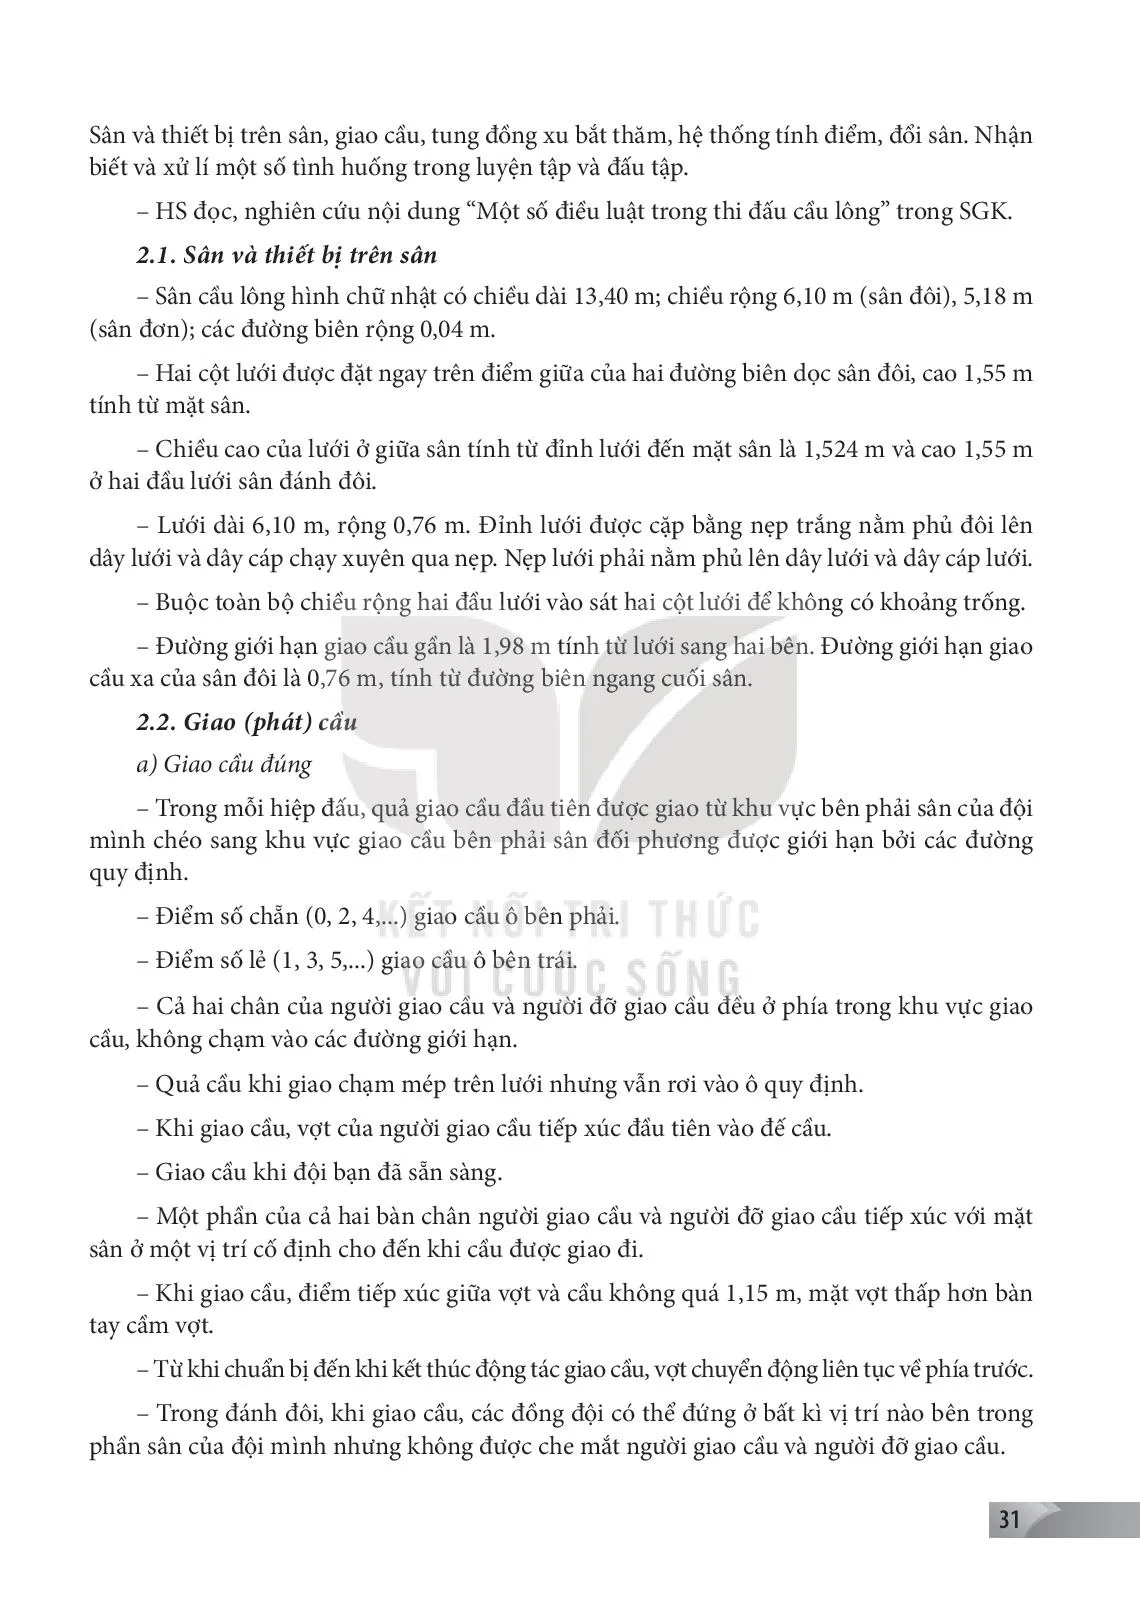 Bài 2. Một số điều luật trong thi đấu cầu lông